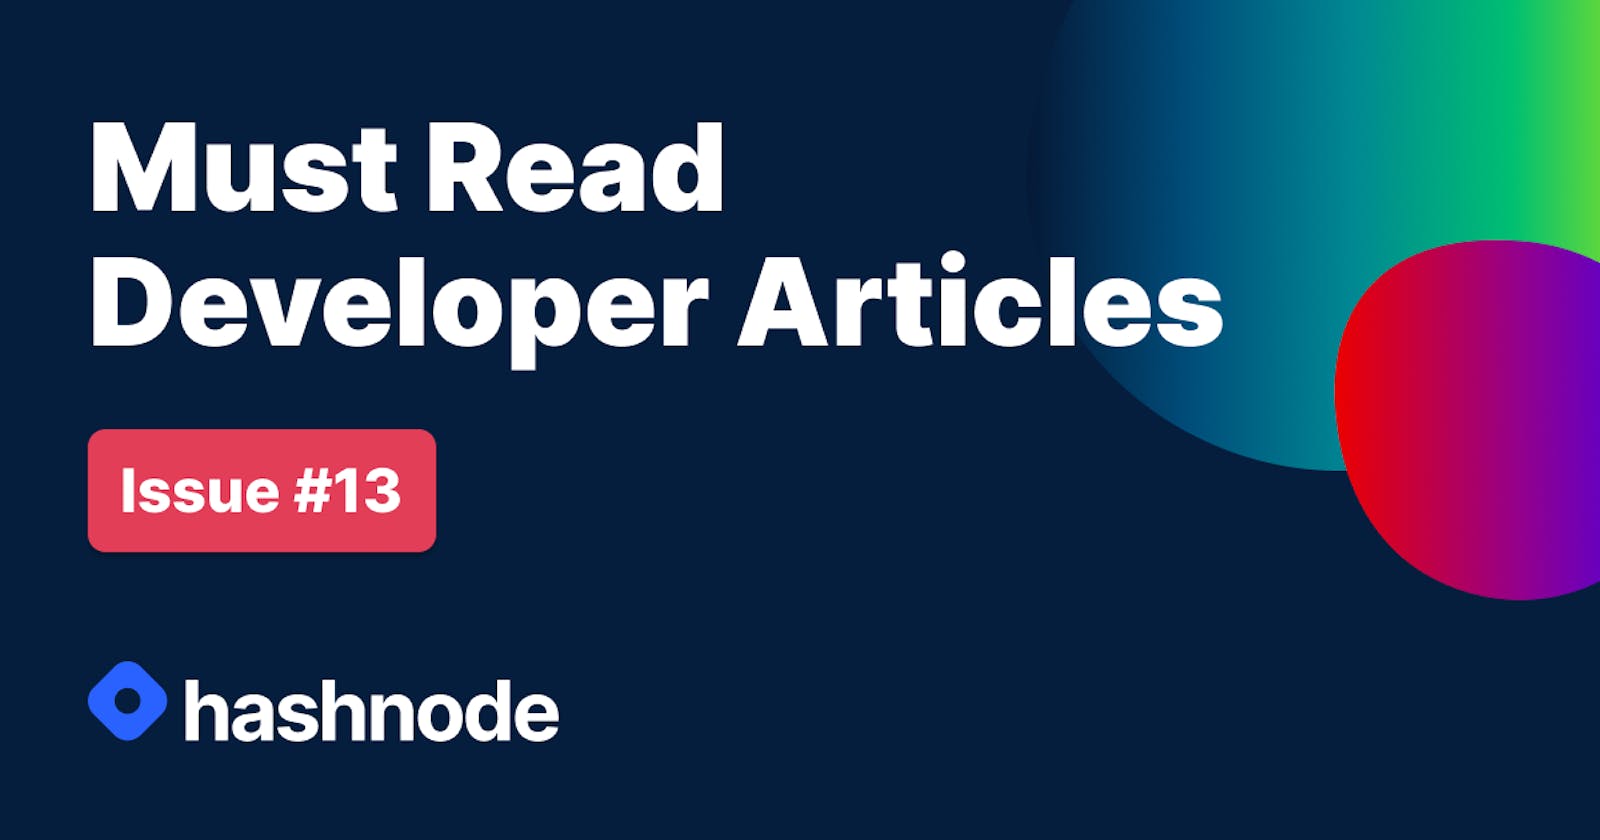 Must Read Developer Articles on Hashnode - #13